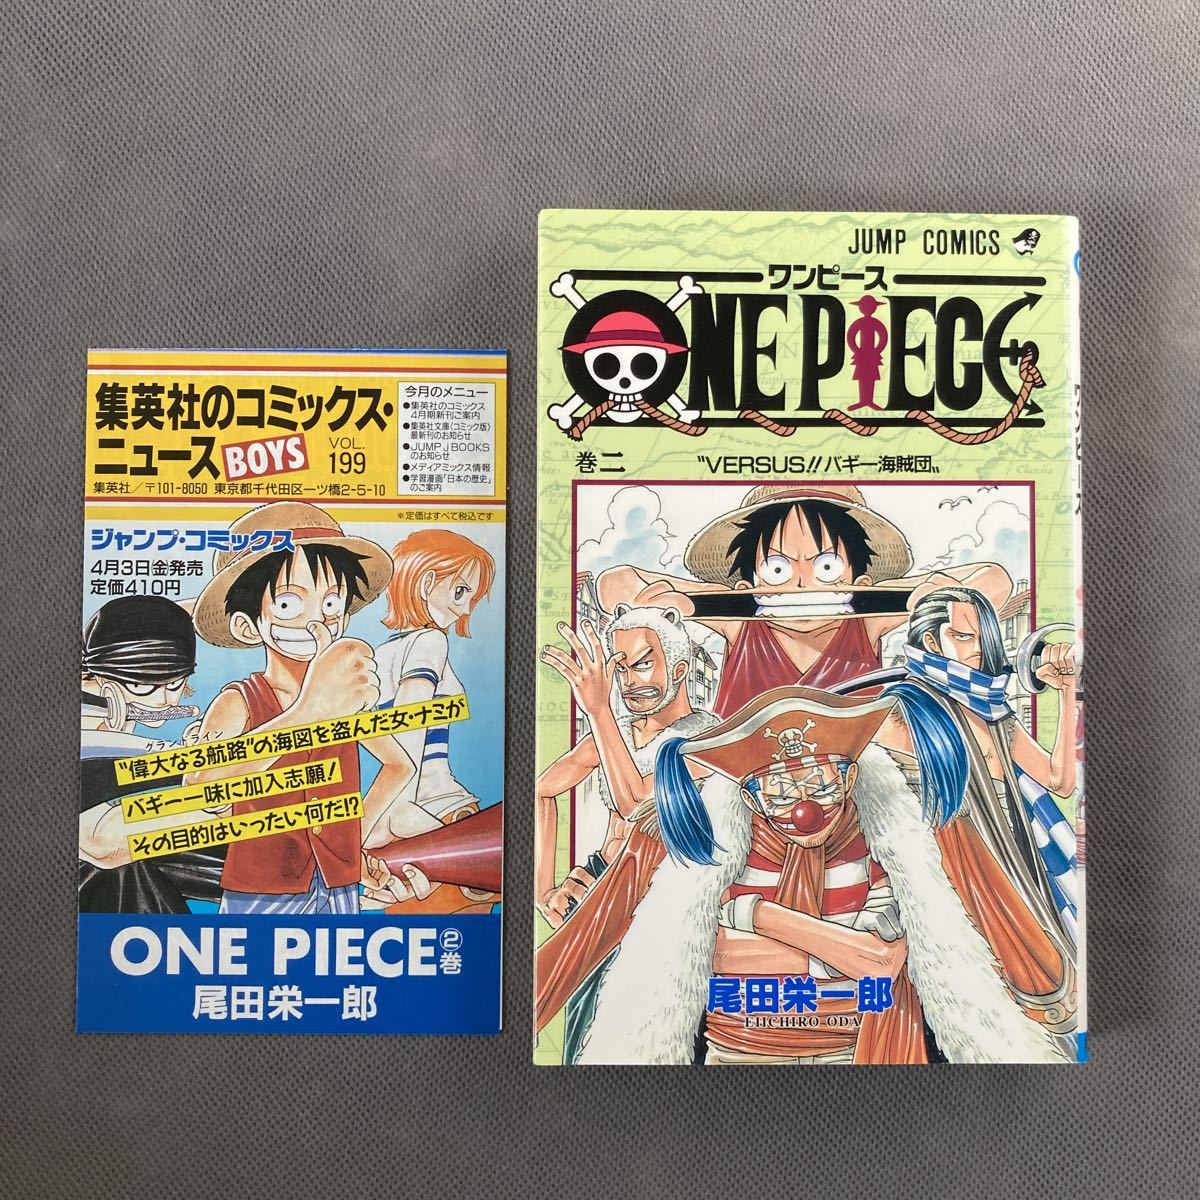 衣裳 One Piece 皆無著 84巻 63巻無し 組み売買 O E Hot 若者漫画 Zetaschools Org